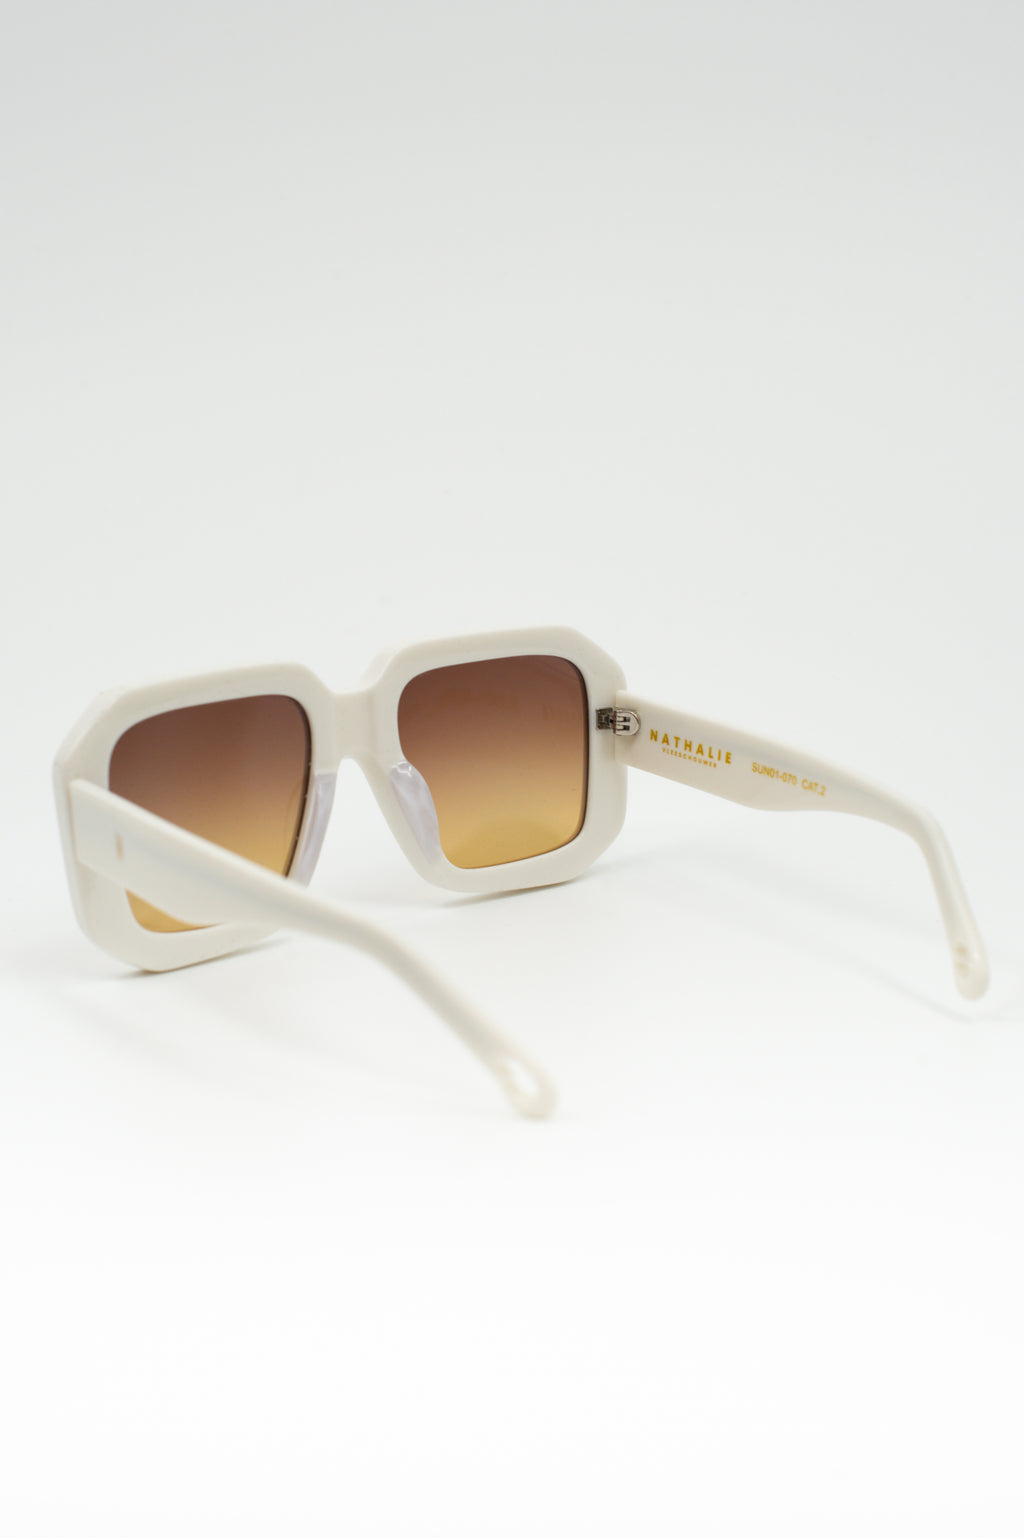 Onassis sunglasses cream / yellow